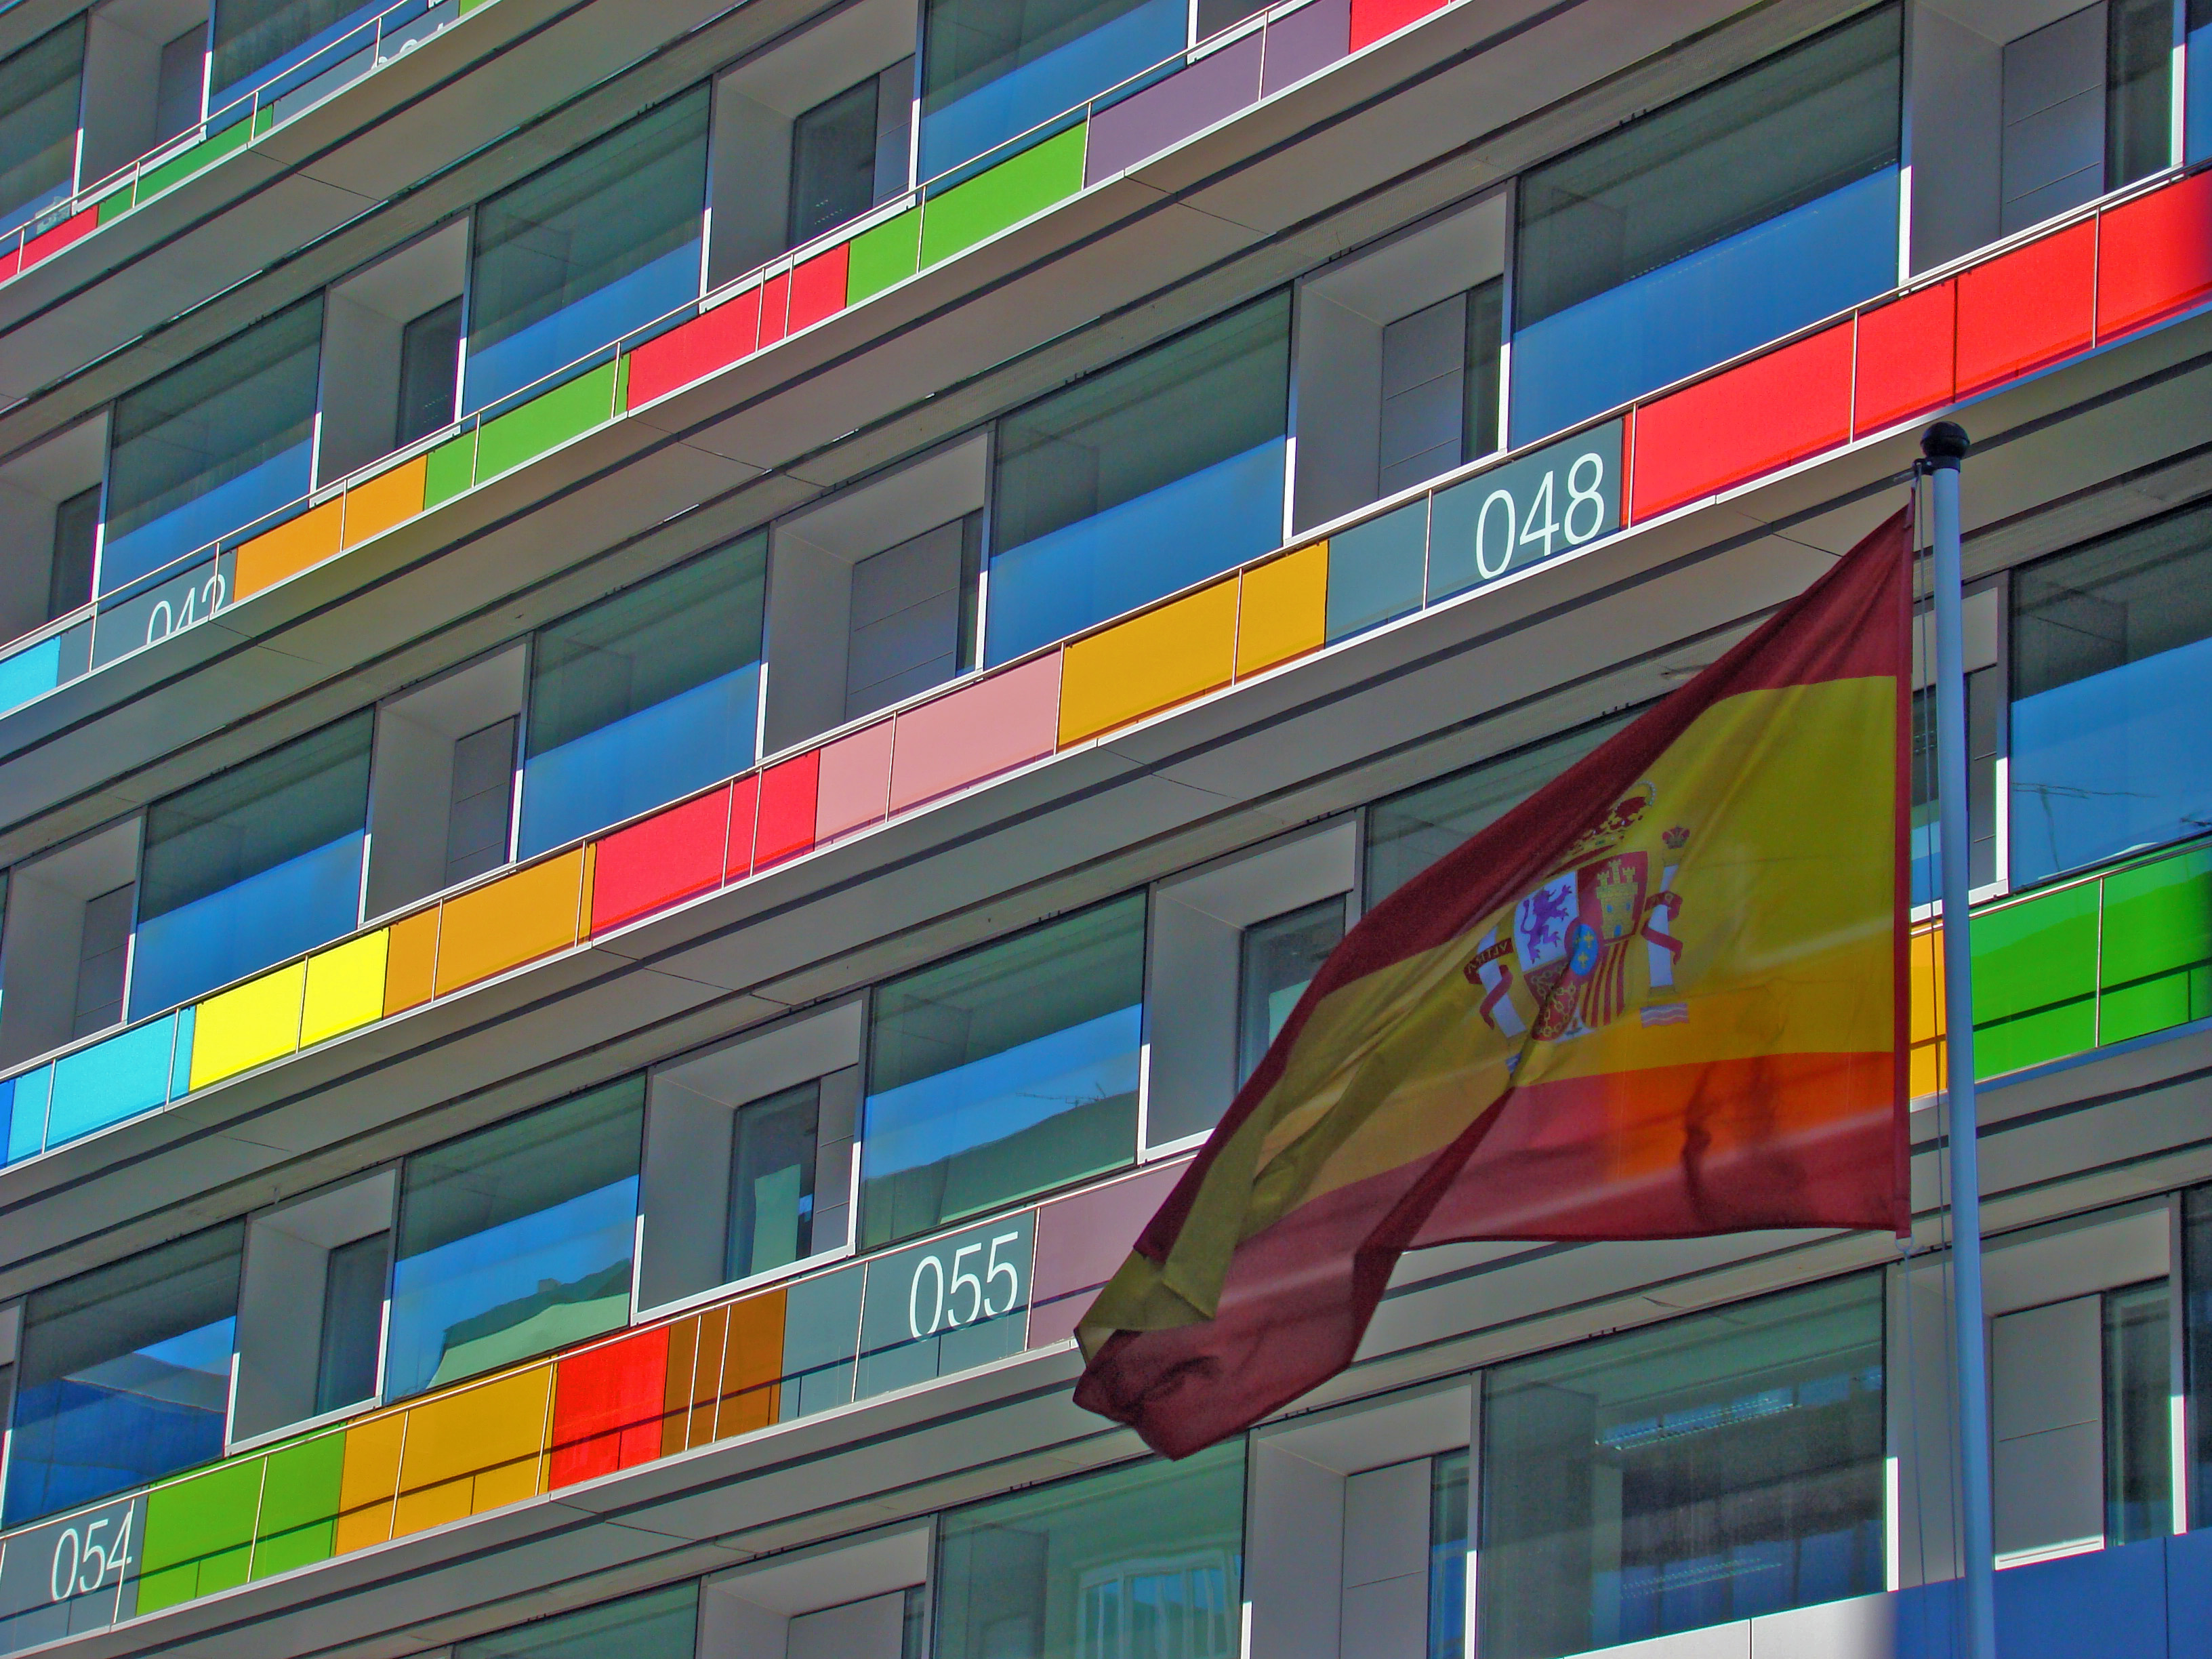 Detalle de la fachada del INE en Madrid. Imagen: Merce Blanco. Fuente: Flickr.